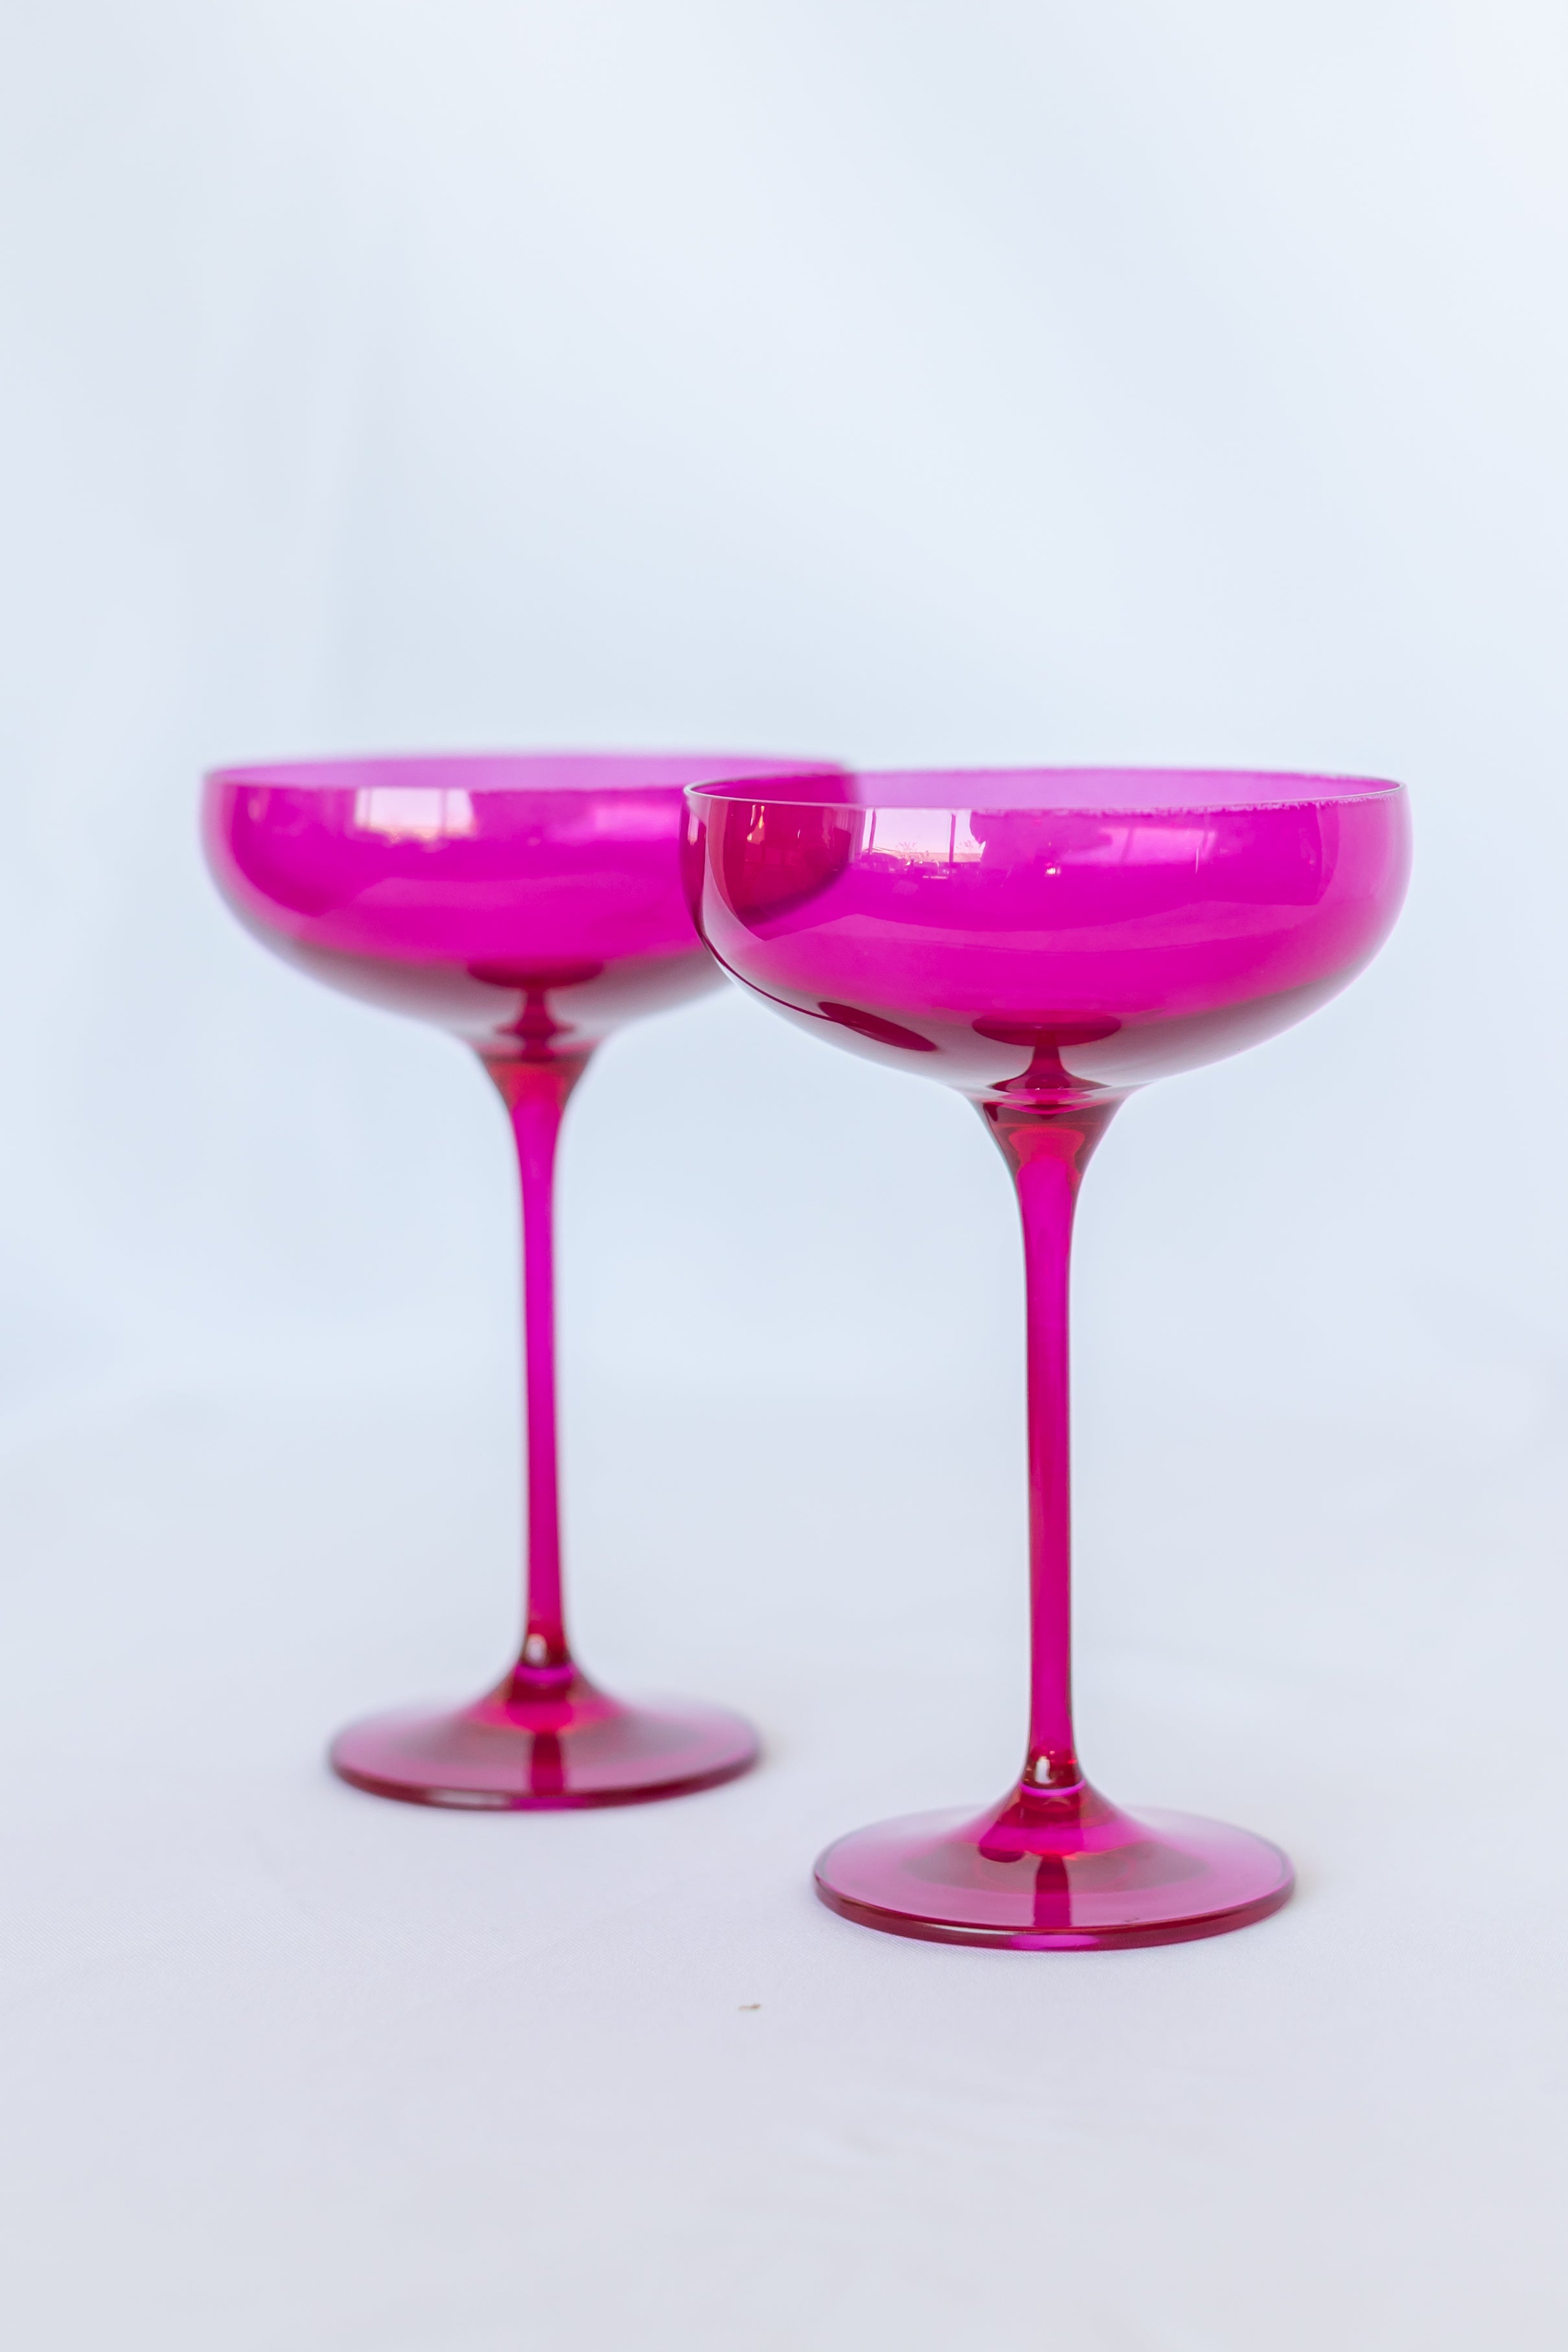 Estelle Colored Champagne Coupe Stemware - Set of 2 {Viva Magenta (Our Fuchsia)}